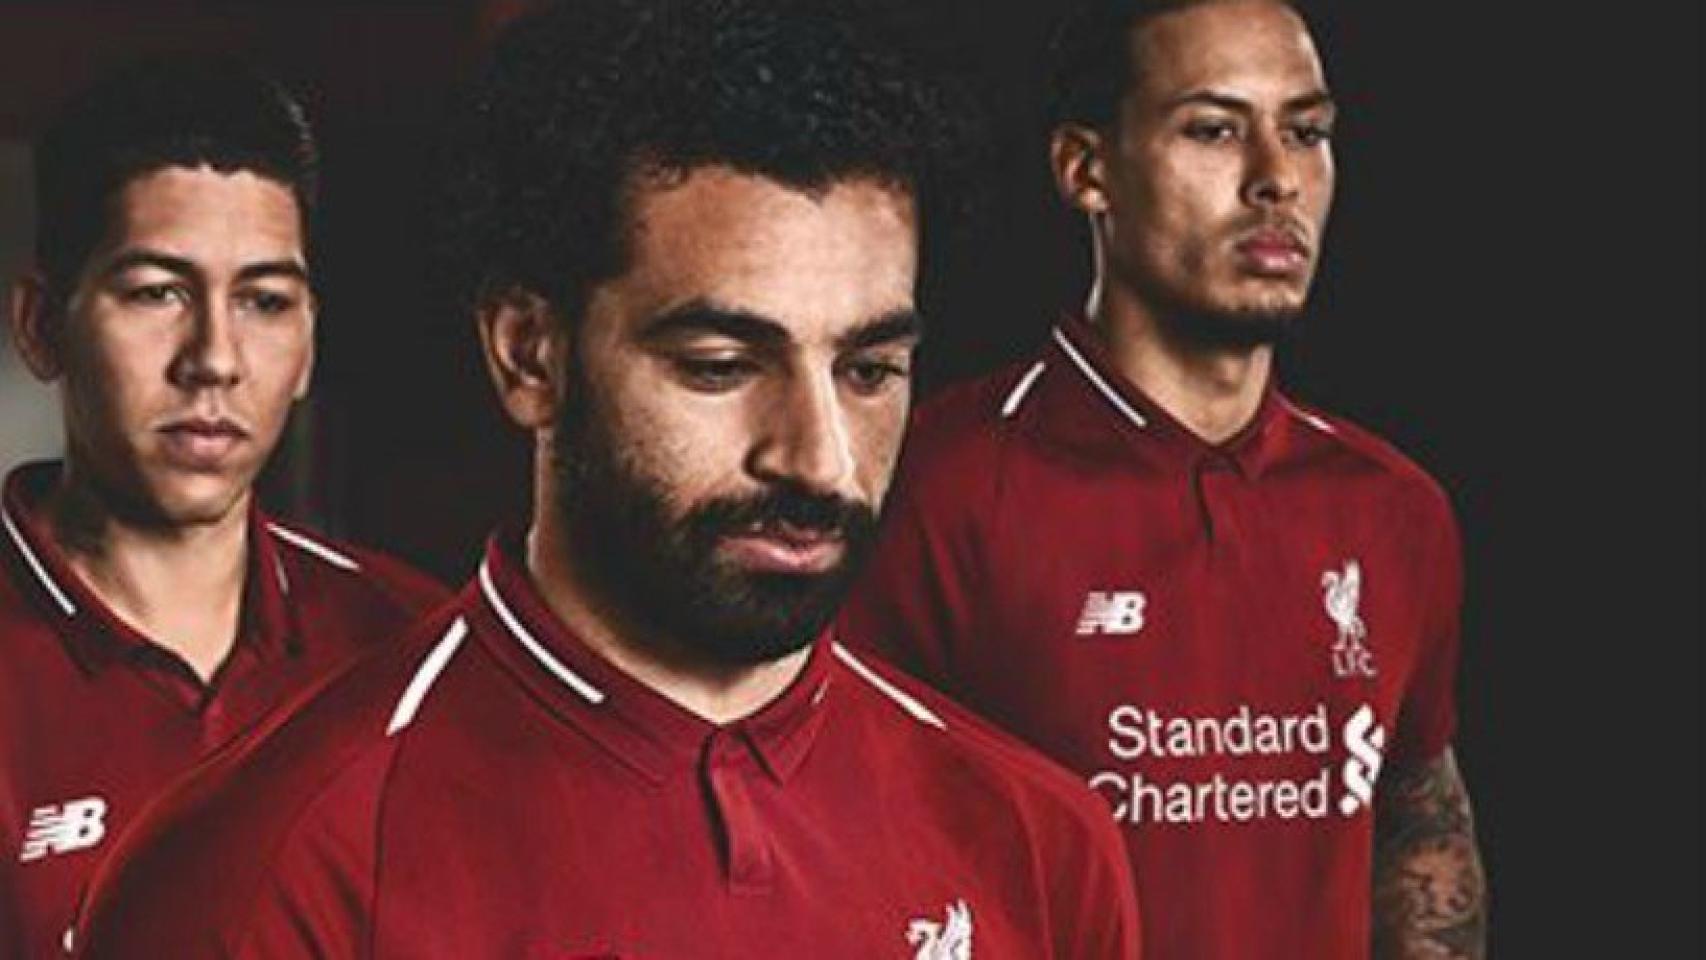 Salah en la campaña publicitaria de la nueva camiseta del Liverpool. Foto liverpoolfc.com